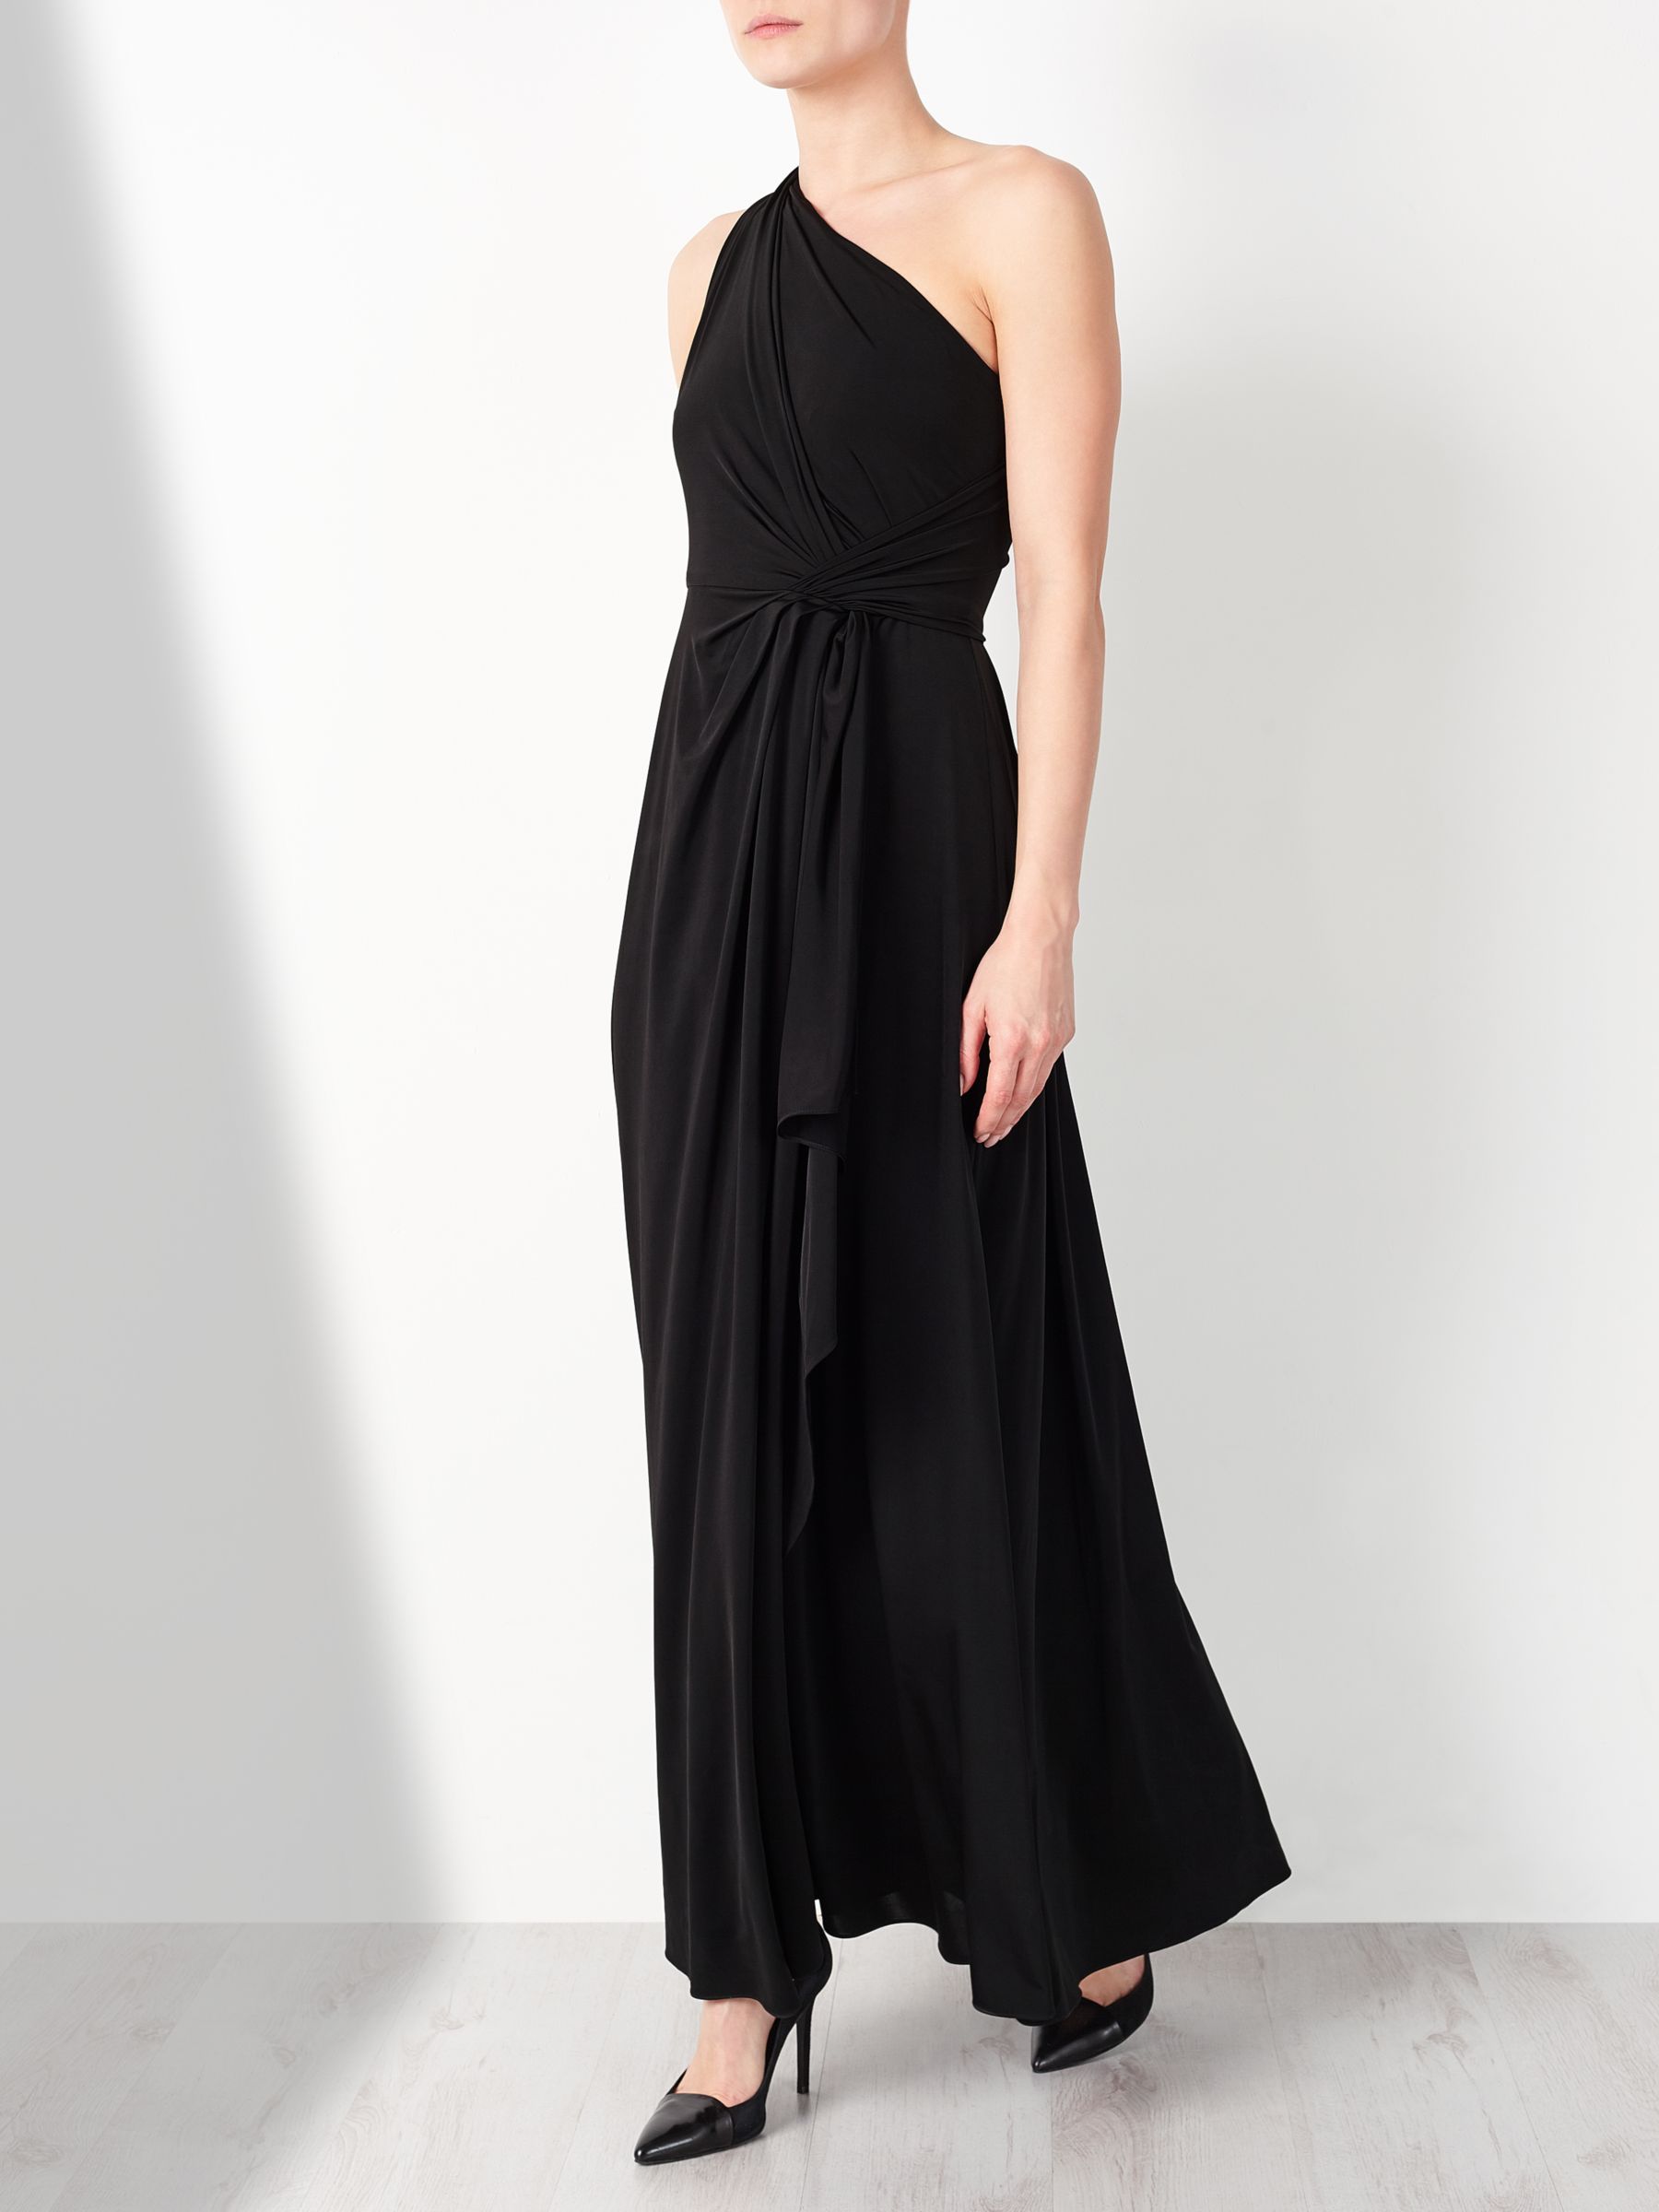 John Lewis & Partners One Shoulder Dress, Black